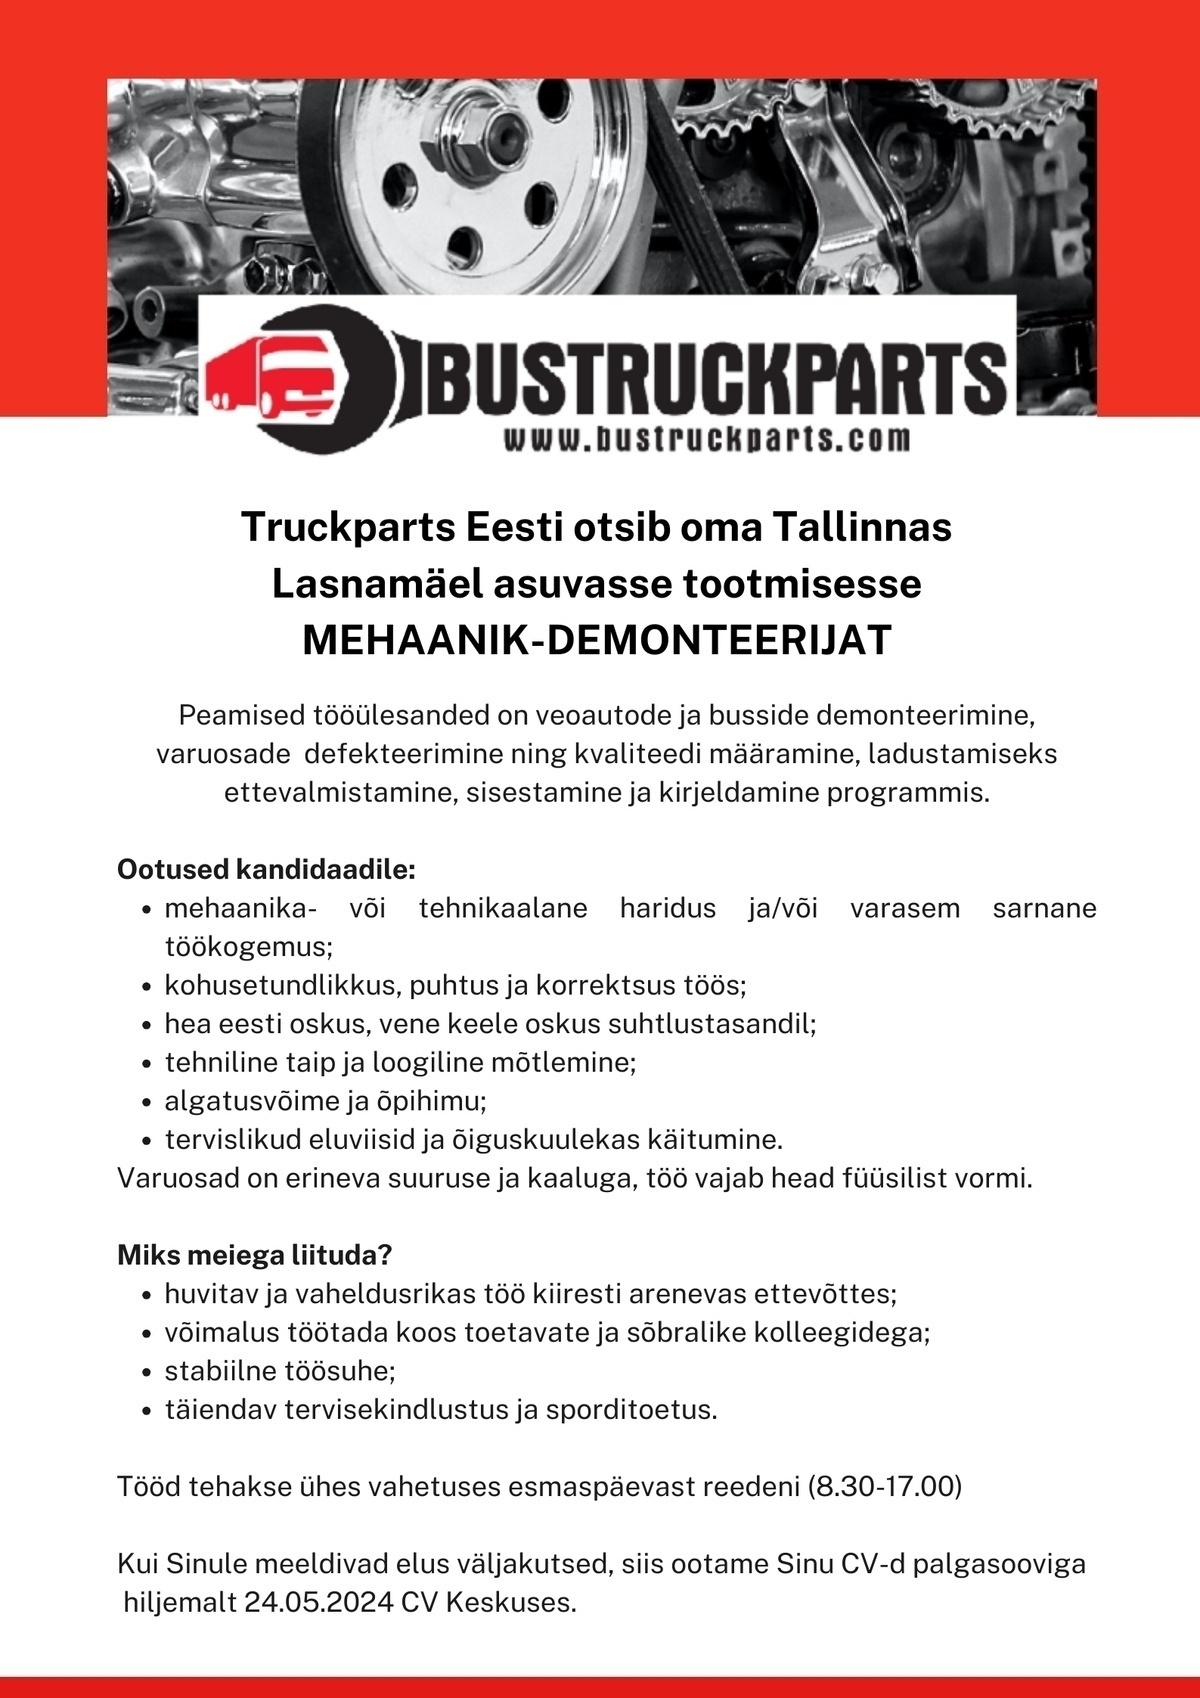 TruckParts Eesti OÜ MEHAANIK-DEMONTEERIJA